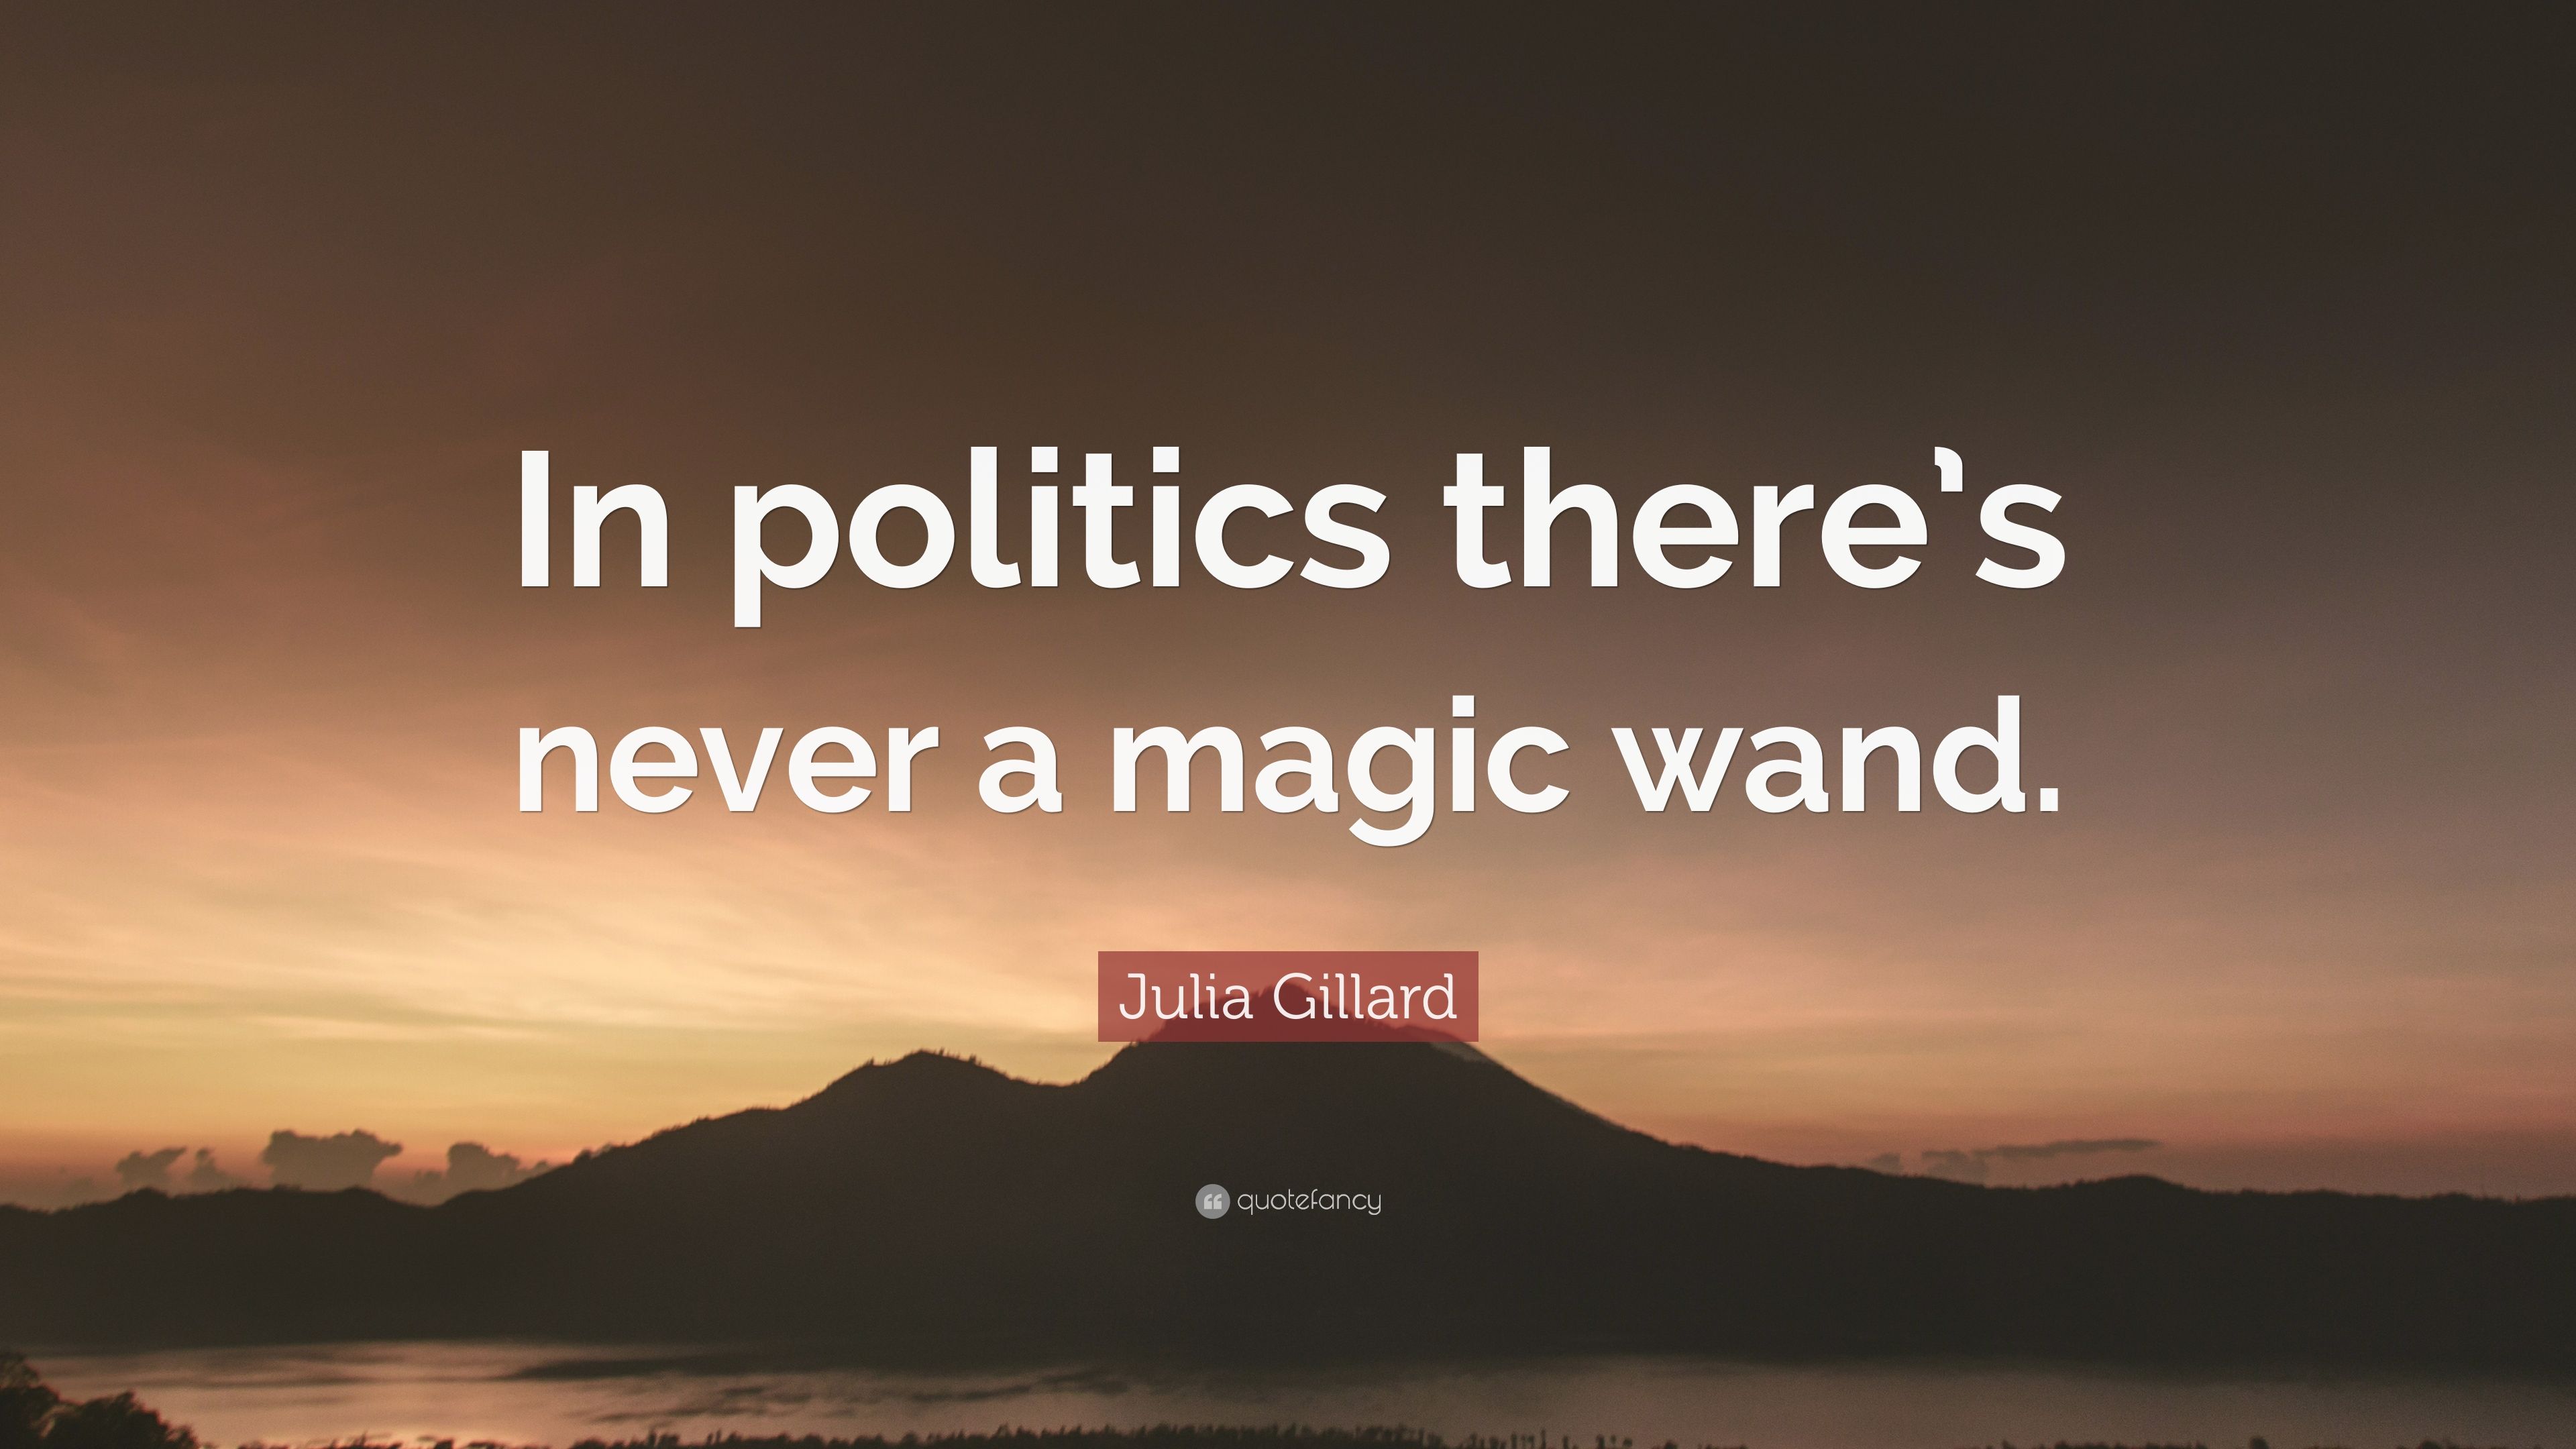 Julia Gillard Quote: “In politics there's never a magic wand.” (7 wallpaper)